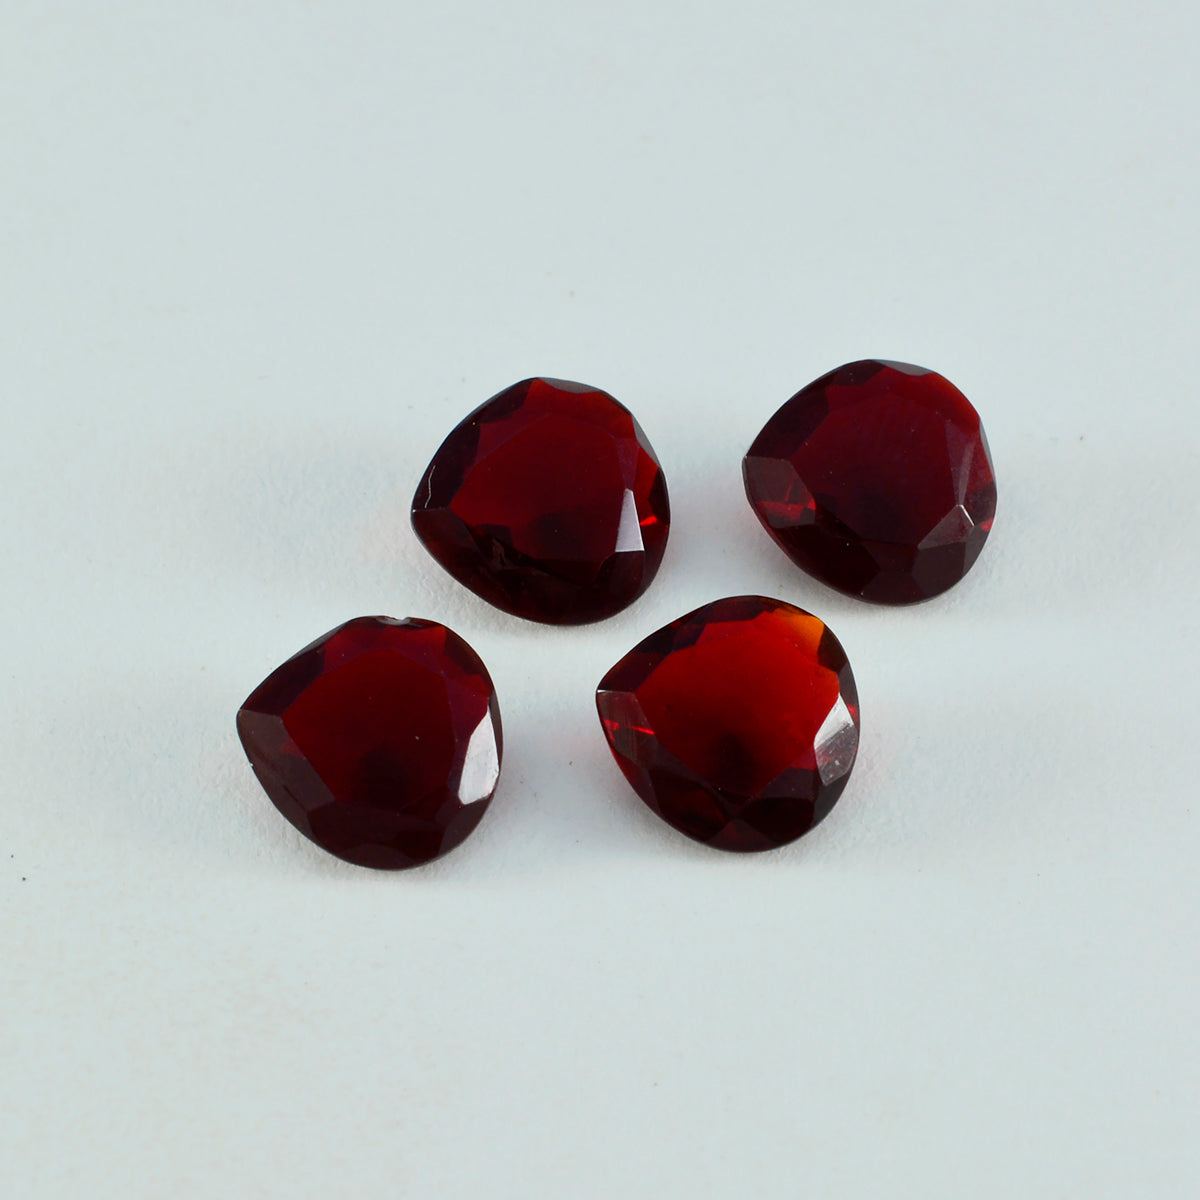 Riyogems 1PC Red Ruby CZ gefacetteerd 11x11 mm hartvorm verbazingwekkende kwaliteit losse edelsteen